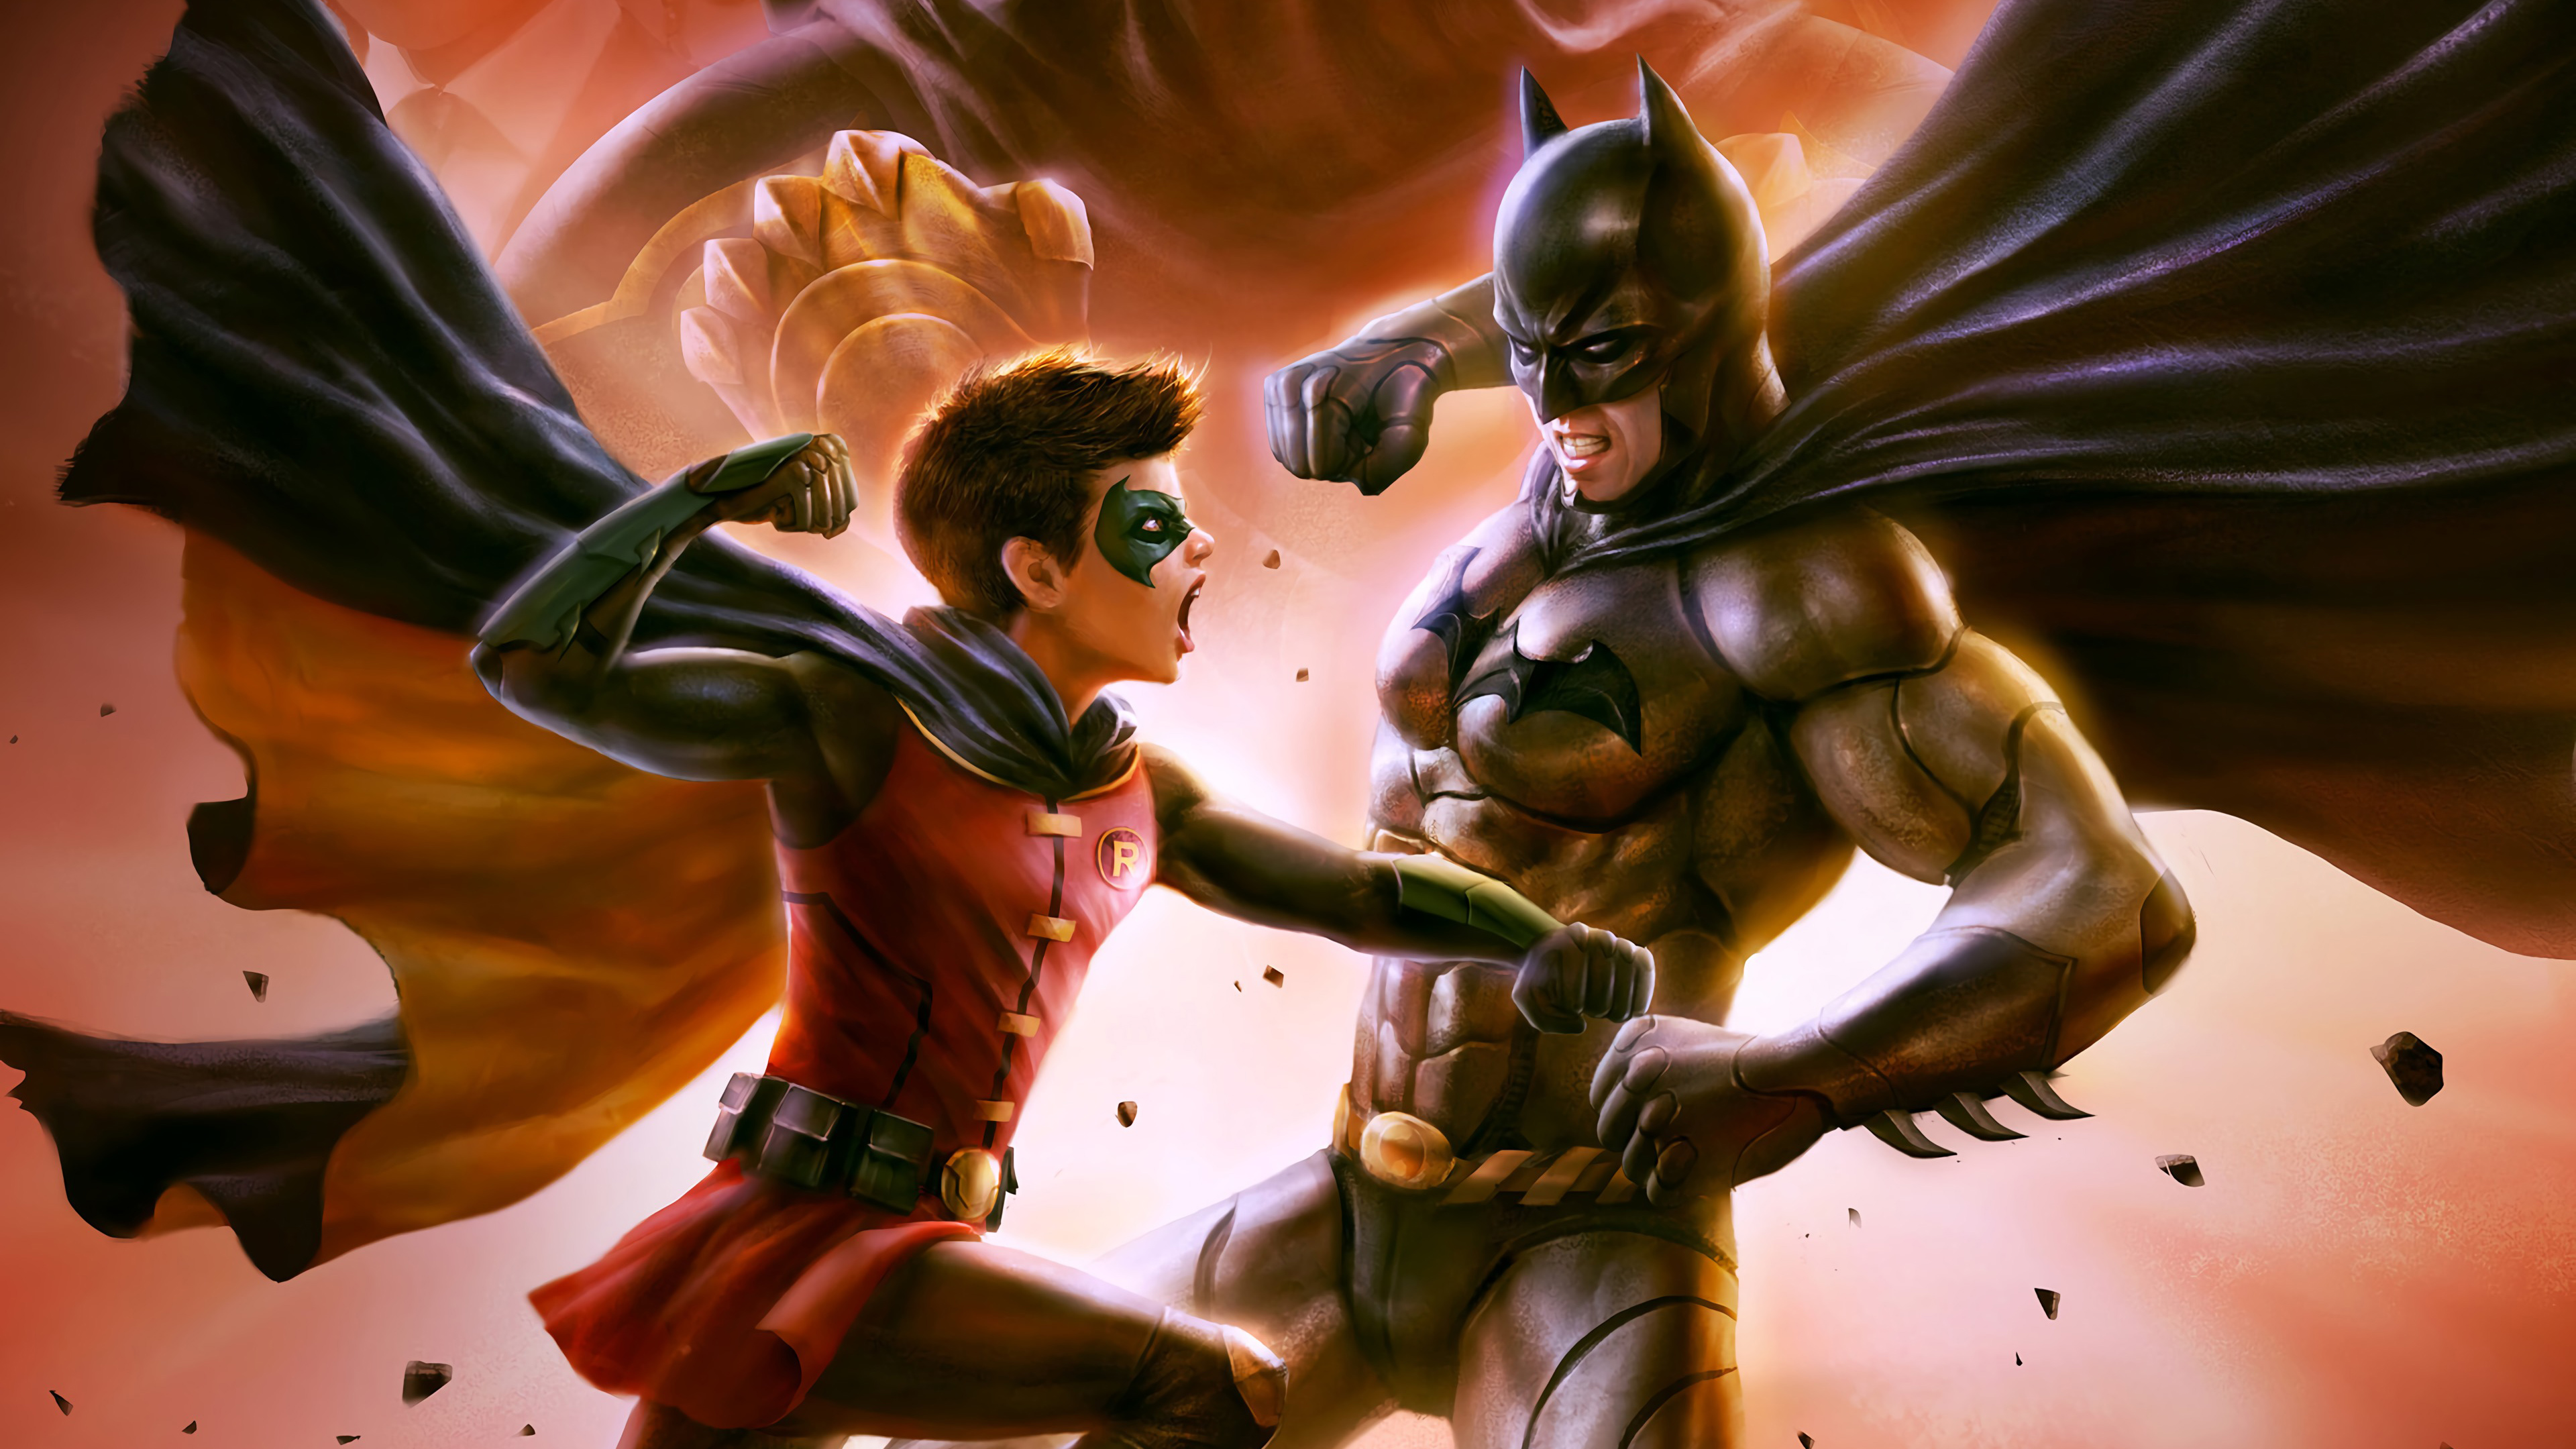 Batman vs. Robin by alon chou